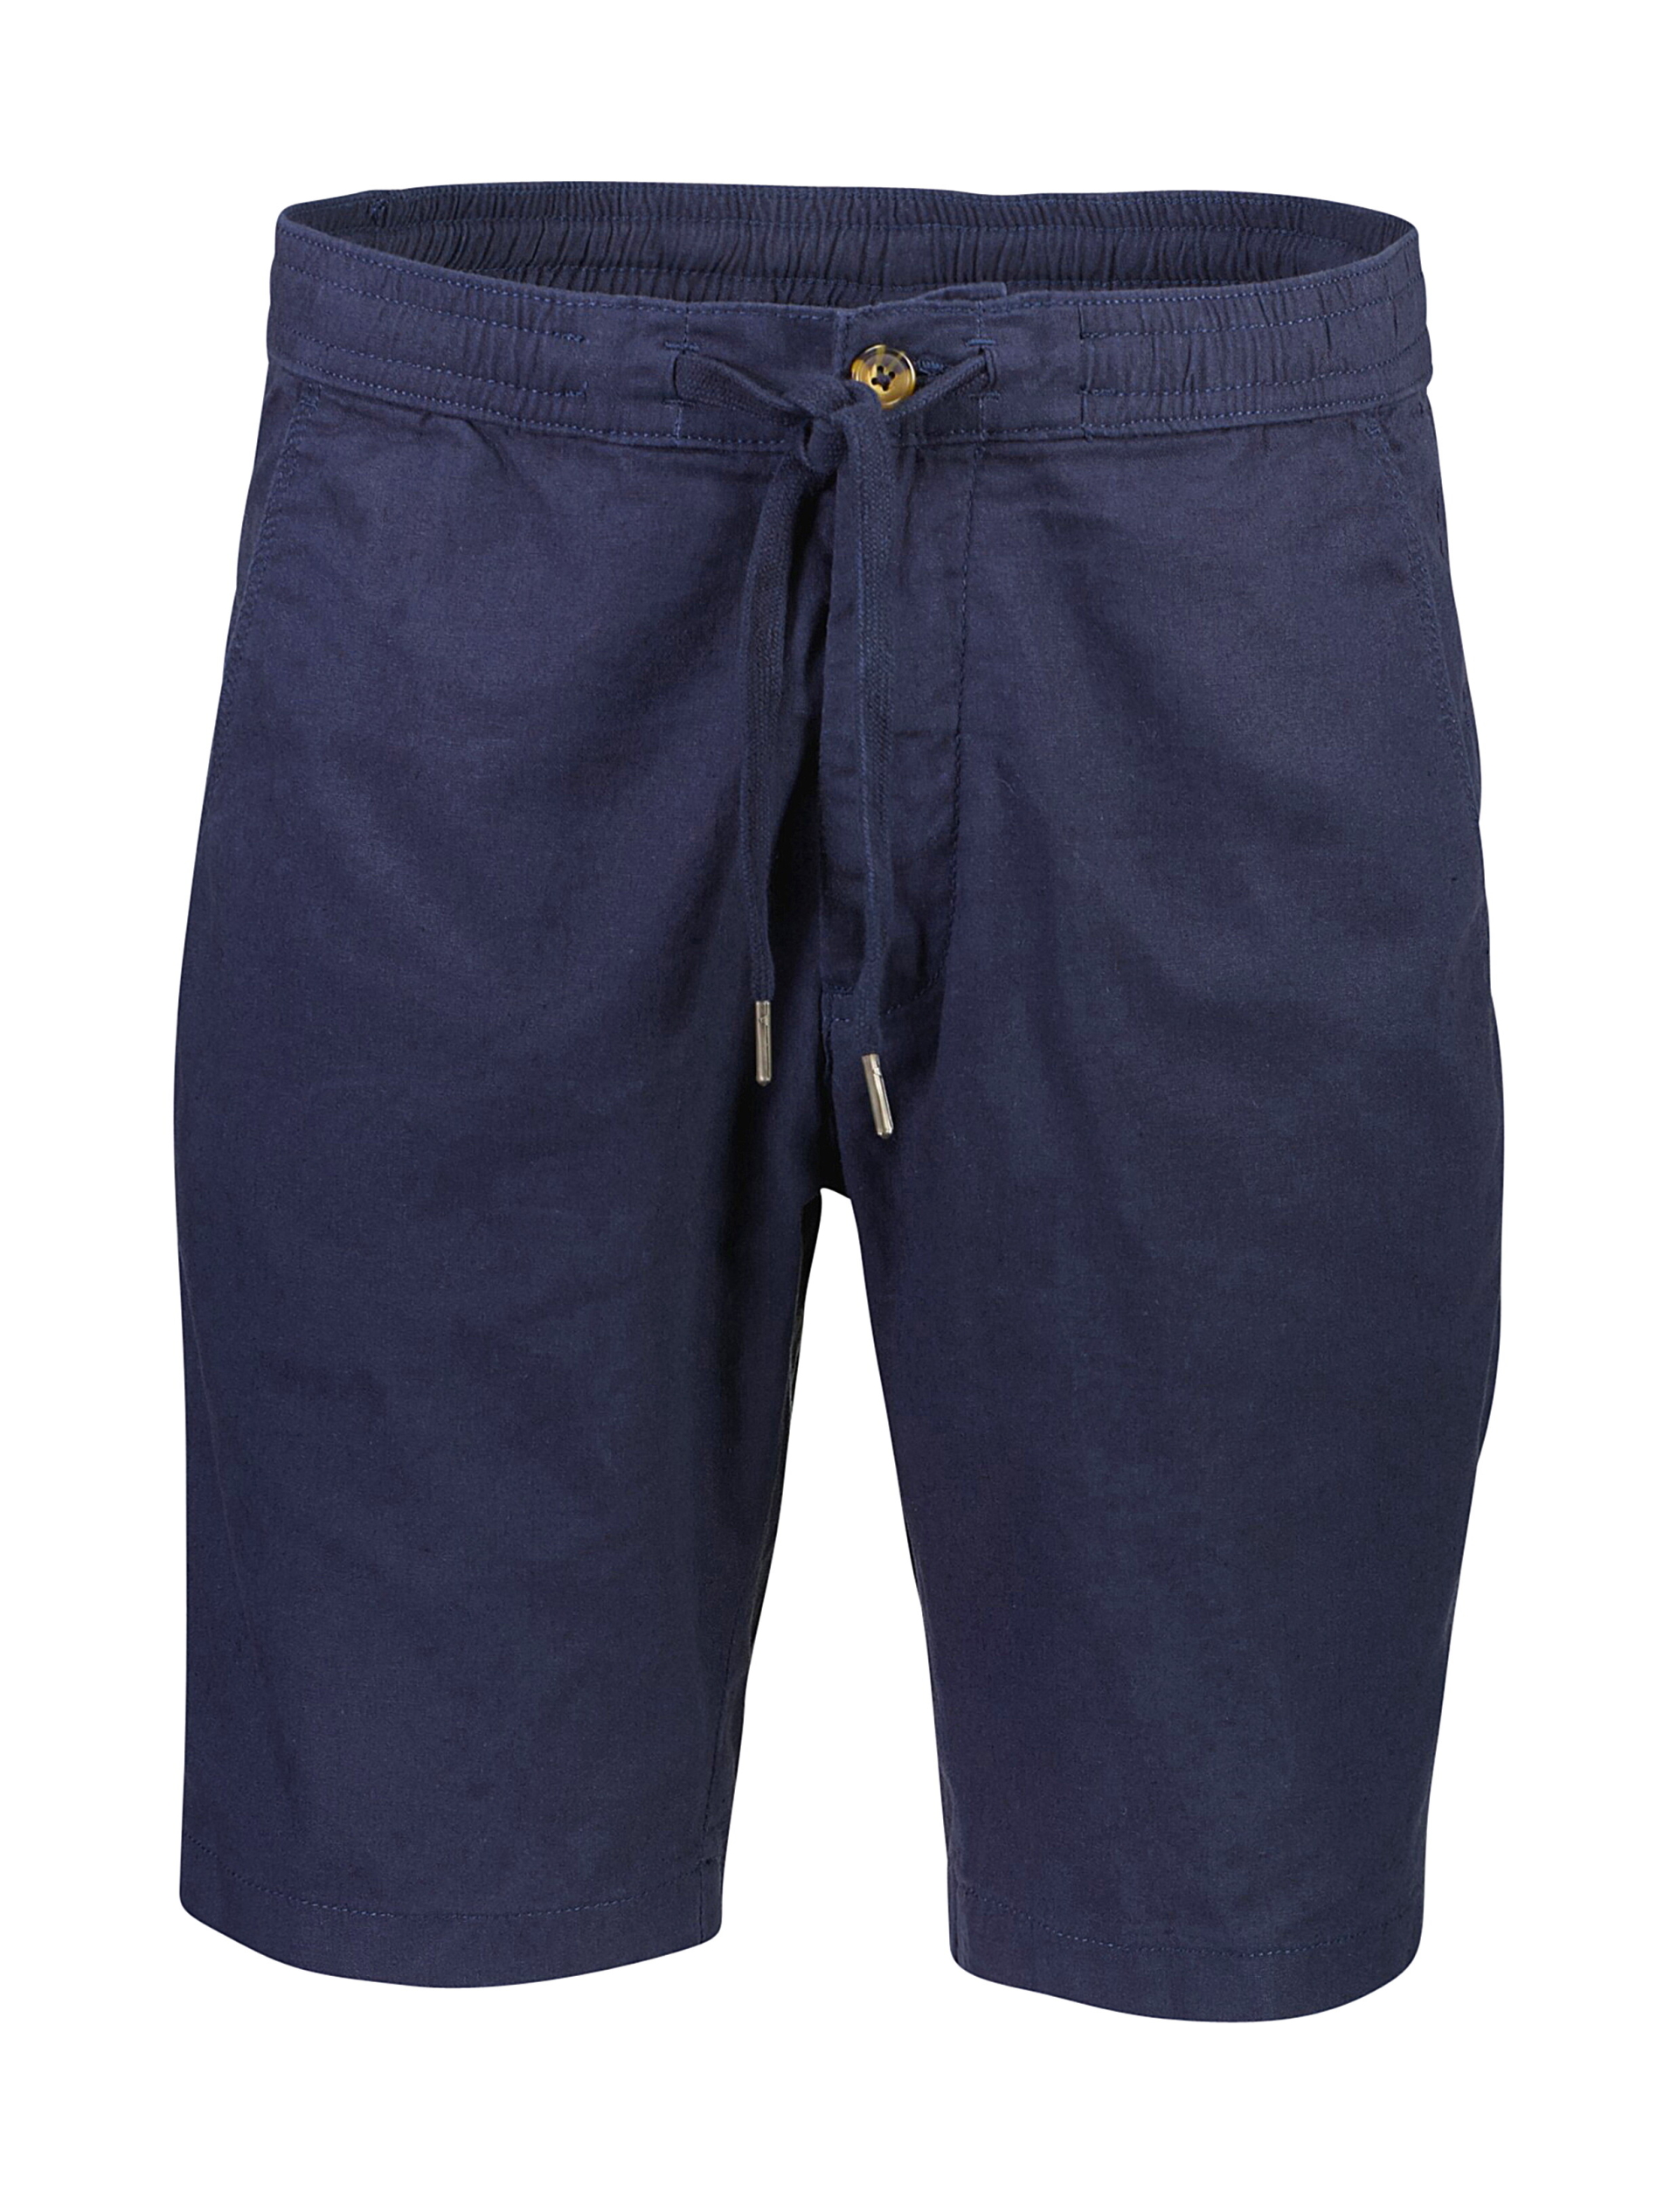 Lindbergh Linen shorts blue / navy